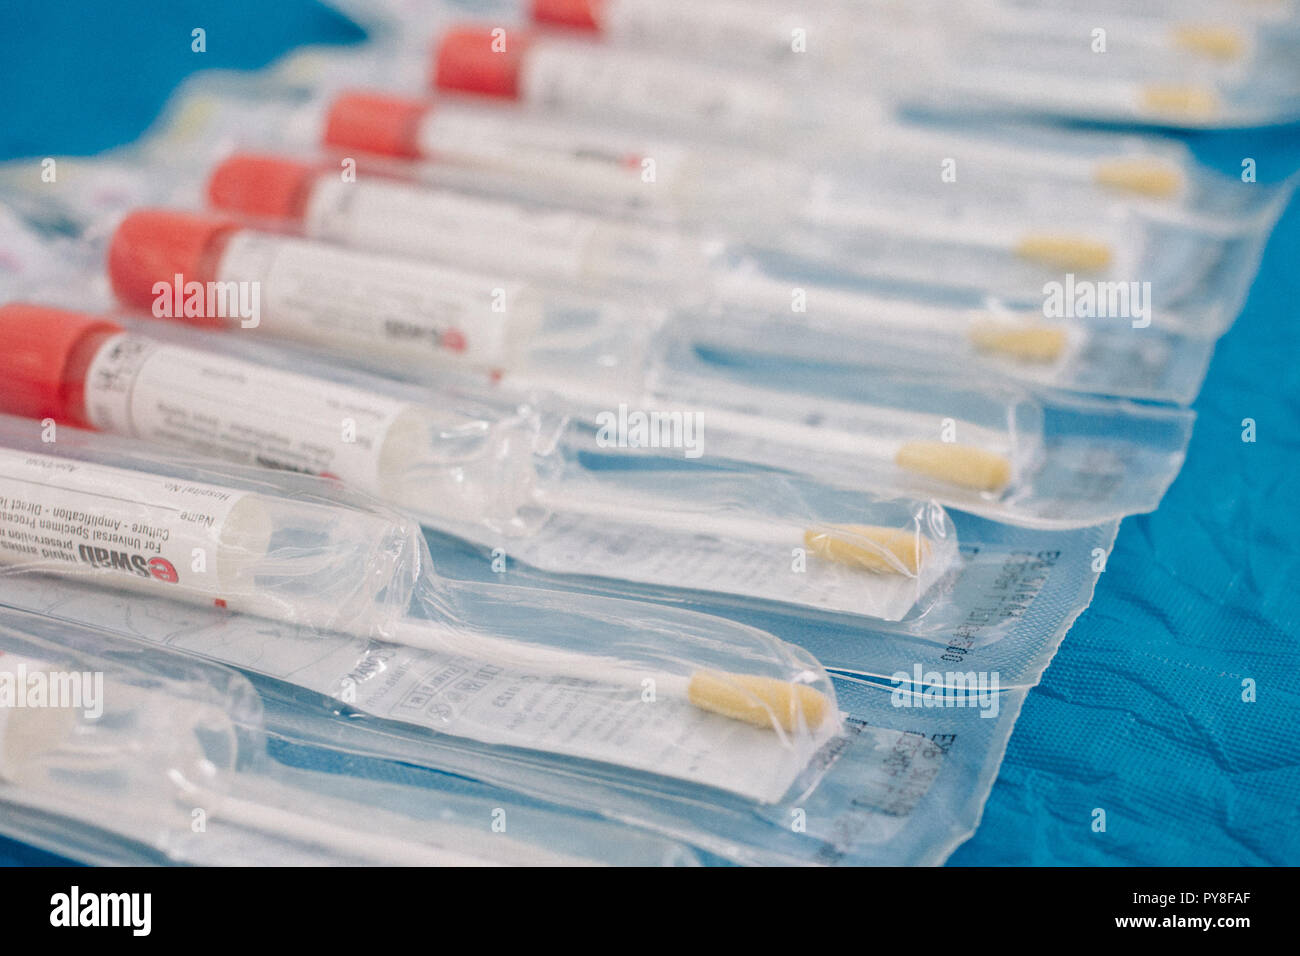 Frjasino, Russland - 06 11 2018: Behälter, die für den biologischen Material auf einem blauen Hintergrund, der Sterilverpackung. Themen für medizinische Forschung Stockfoto